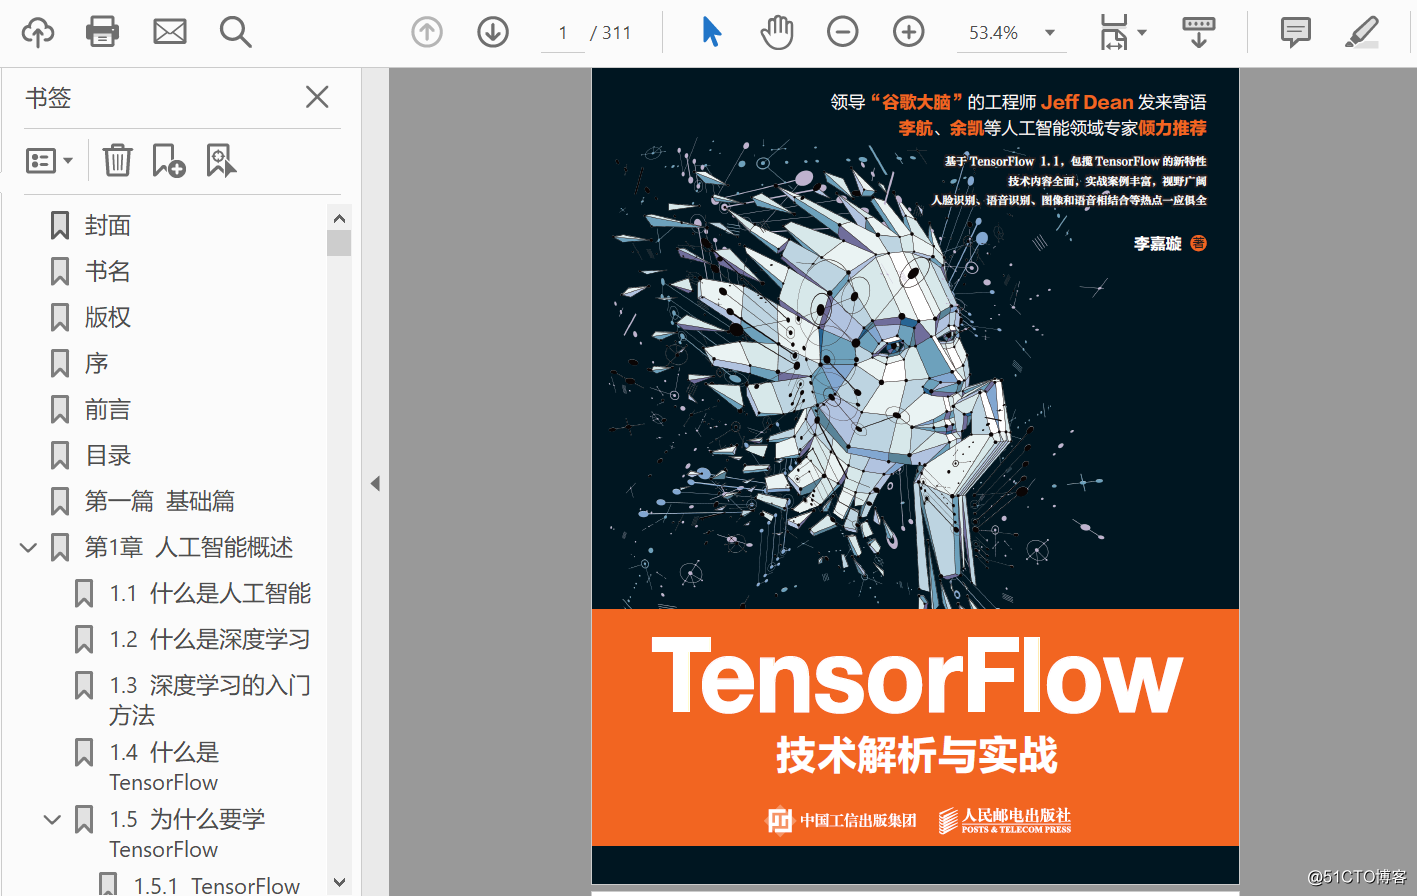 机器学习深度学习领域参考书 《TensorFlow技术解析与实战》PDF下载